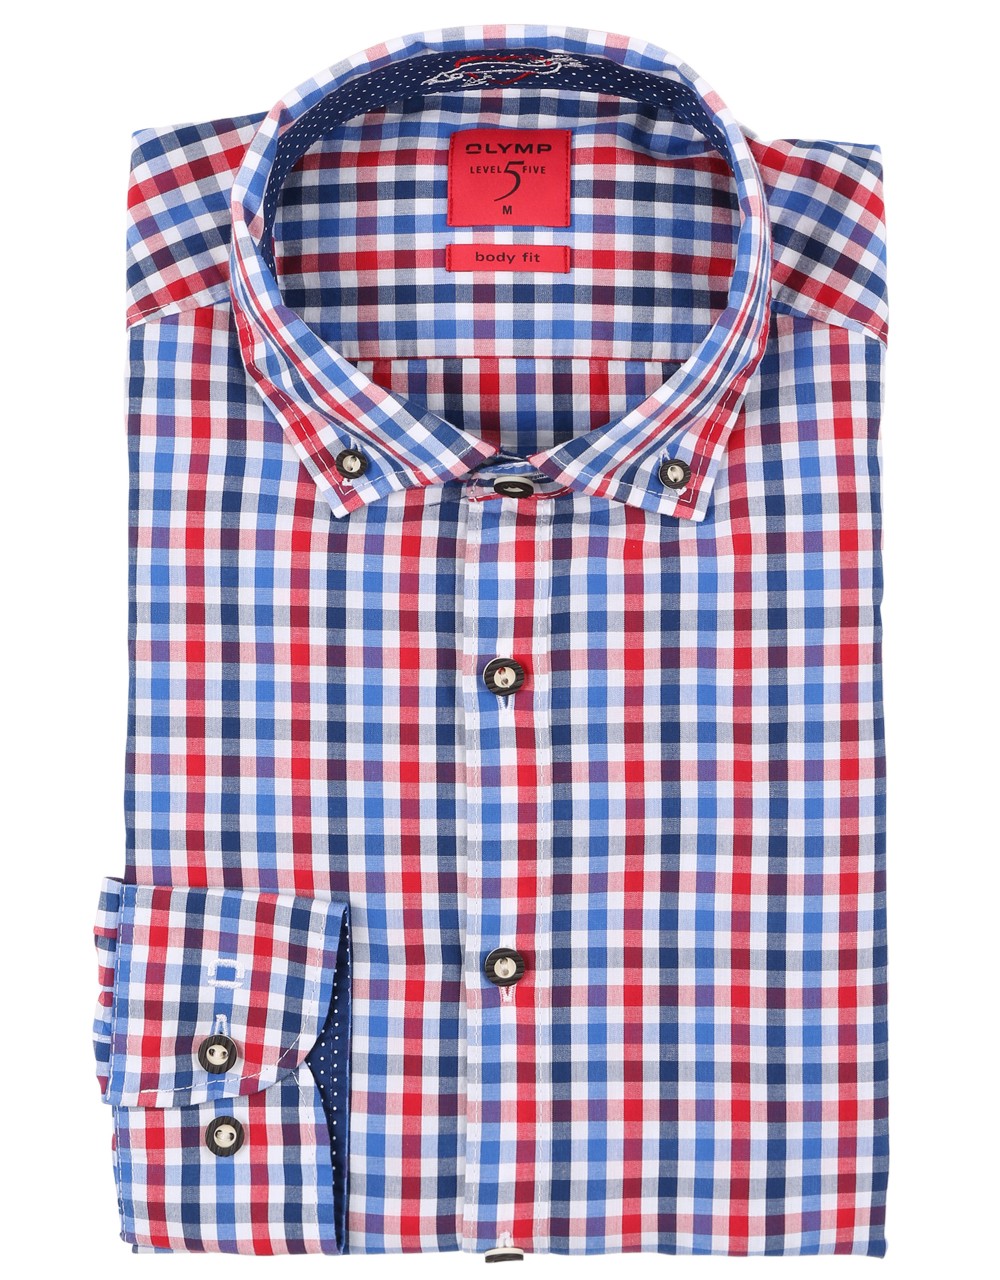 Voorvertoning: Trachten shirt Olymp blauw / rood geruit